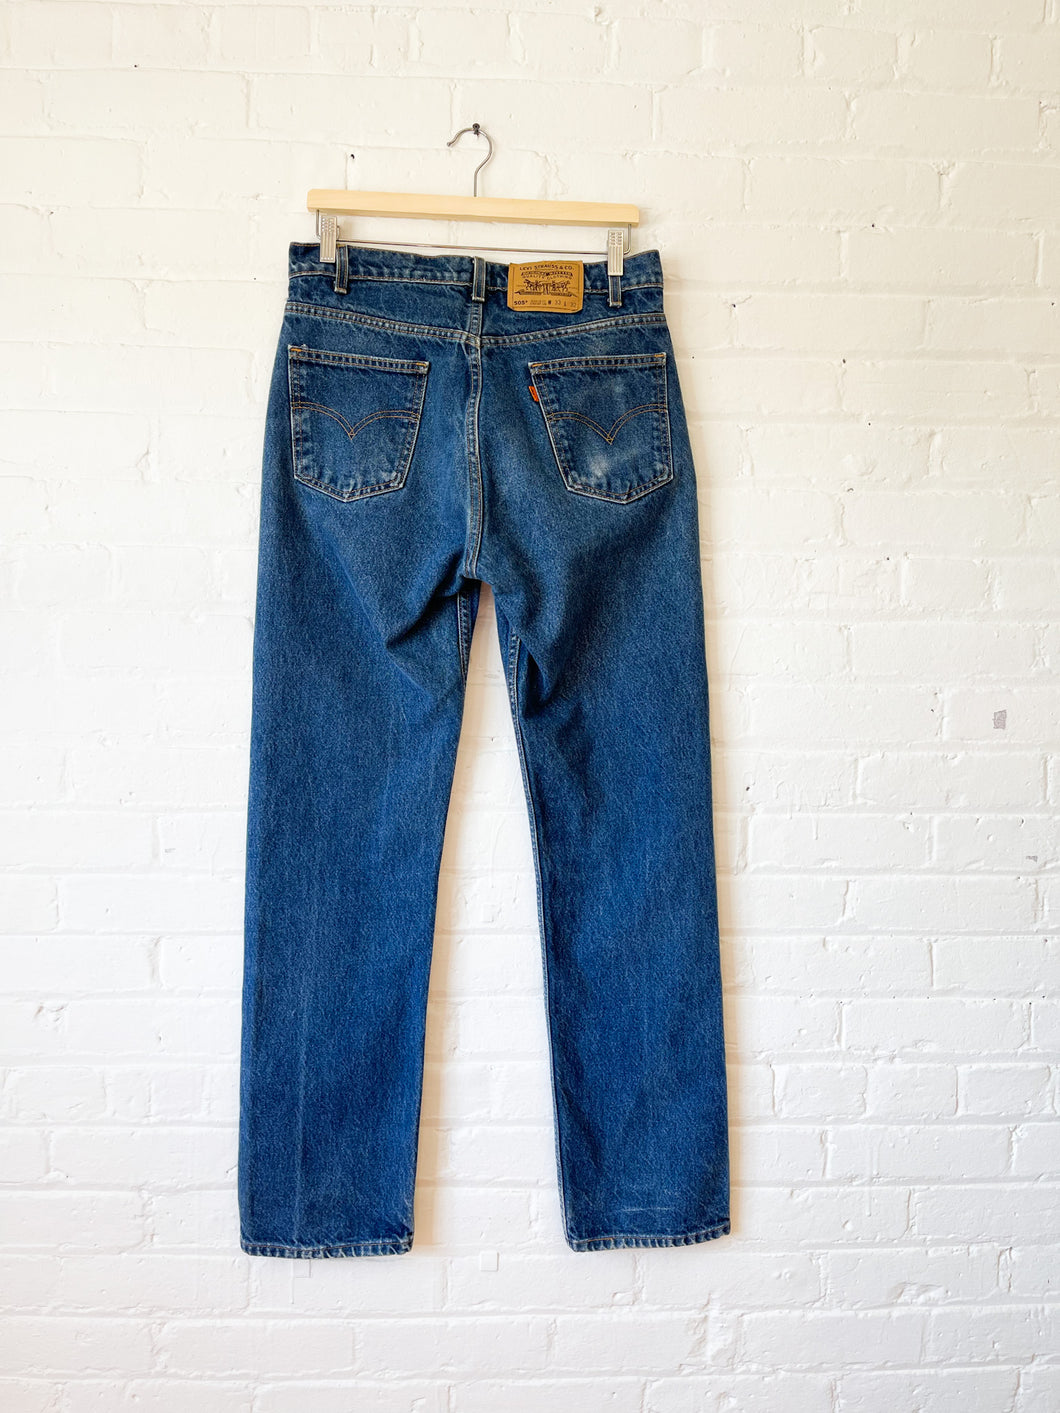 Levi's 505 VINTAGE Jeans - Select Your Size & Wash